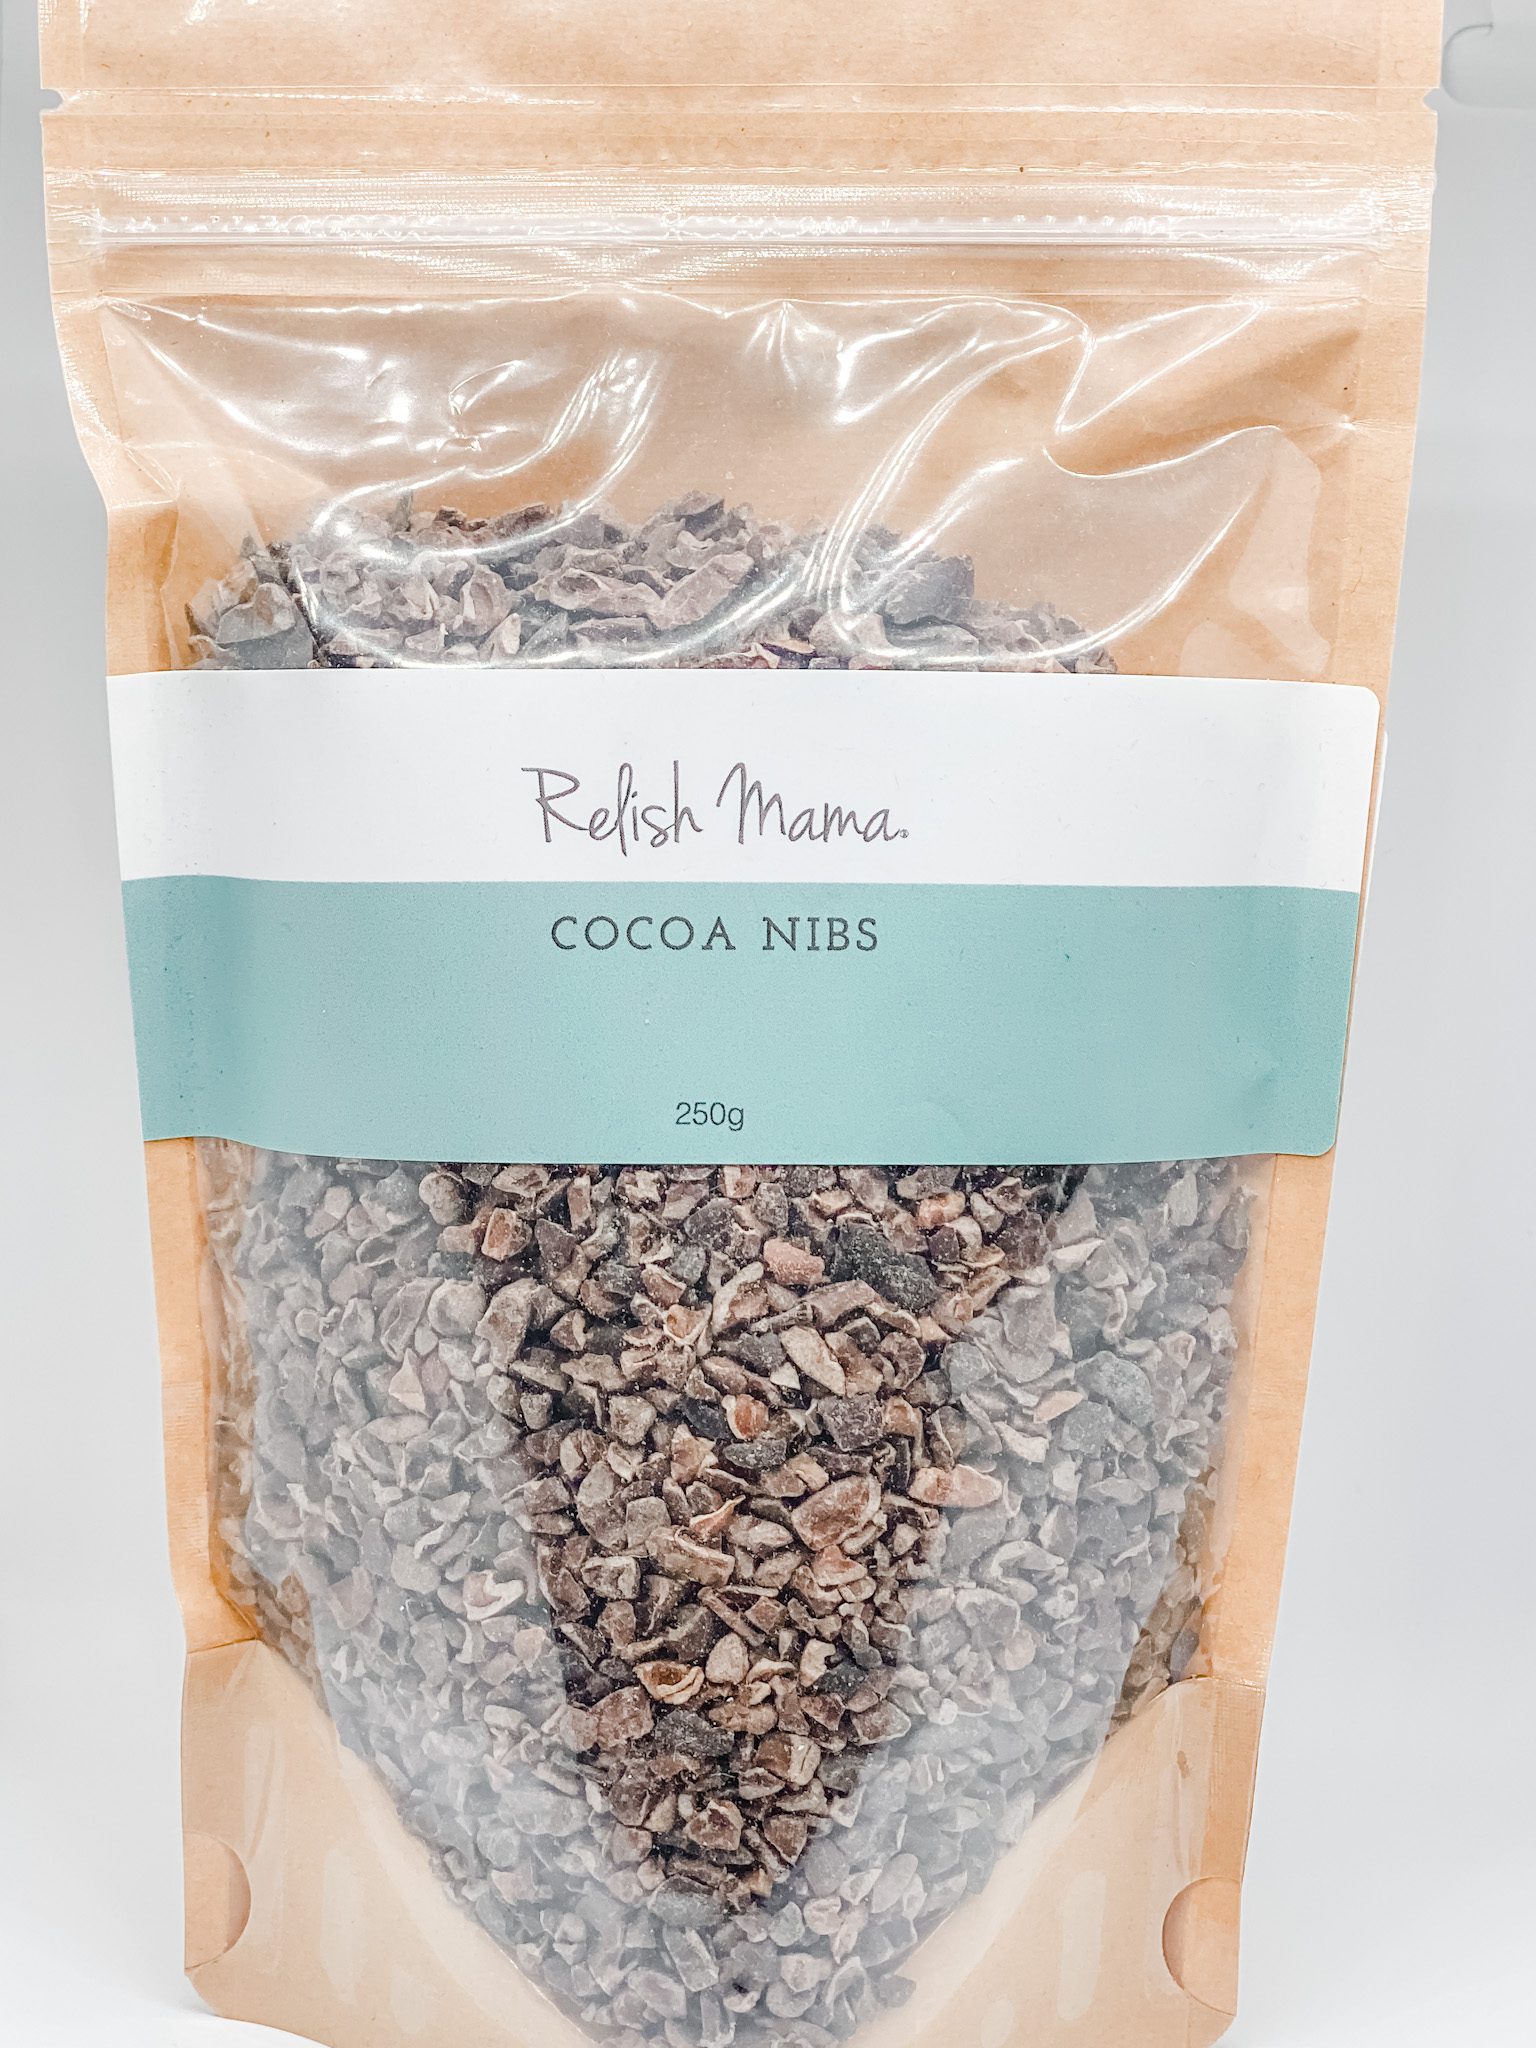 Cocoa nibs by Relish Mama